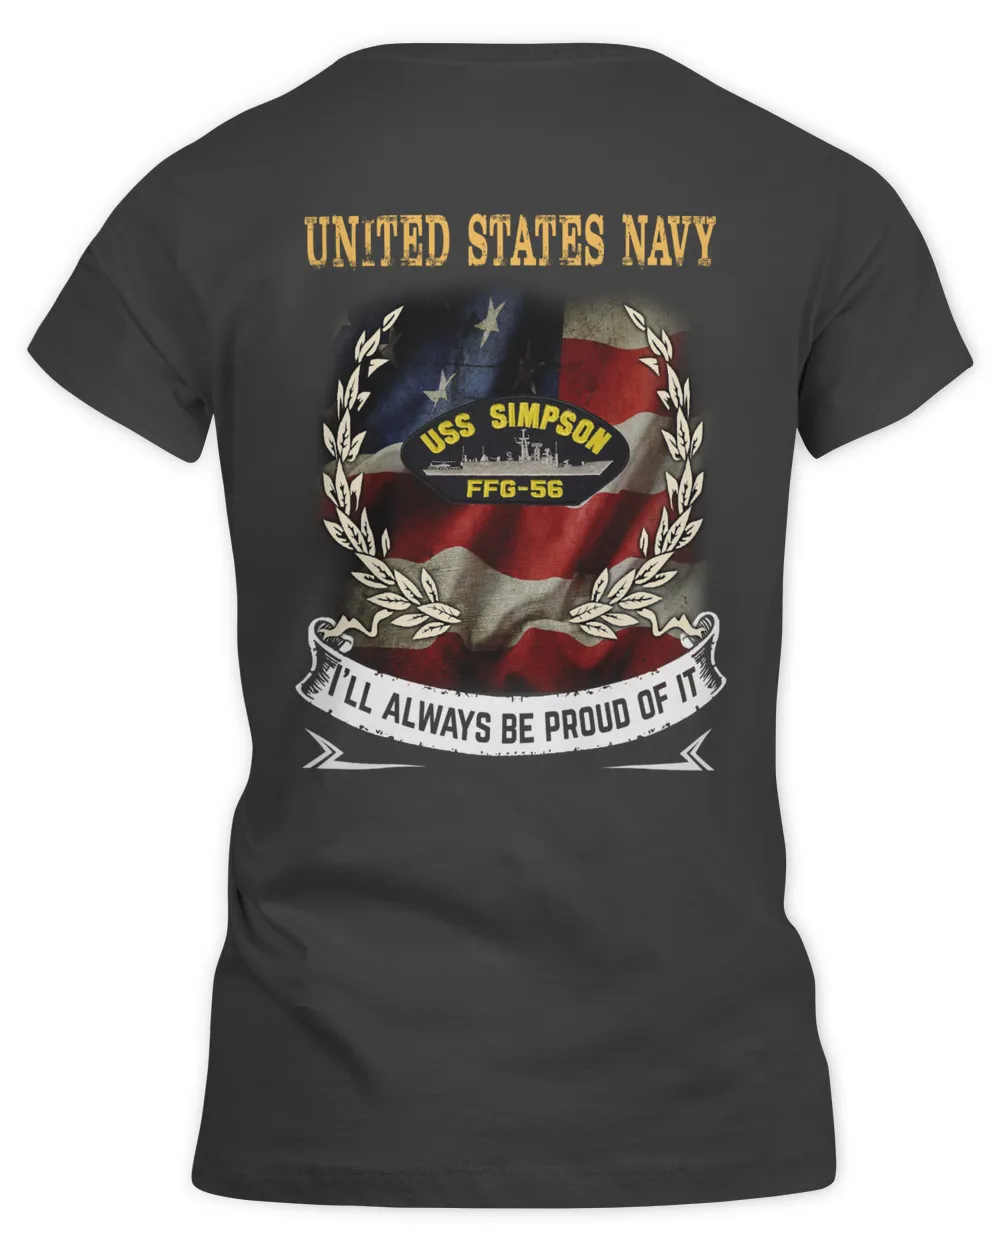 USS Simpson (FFG-56) Tshirt